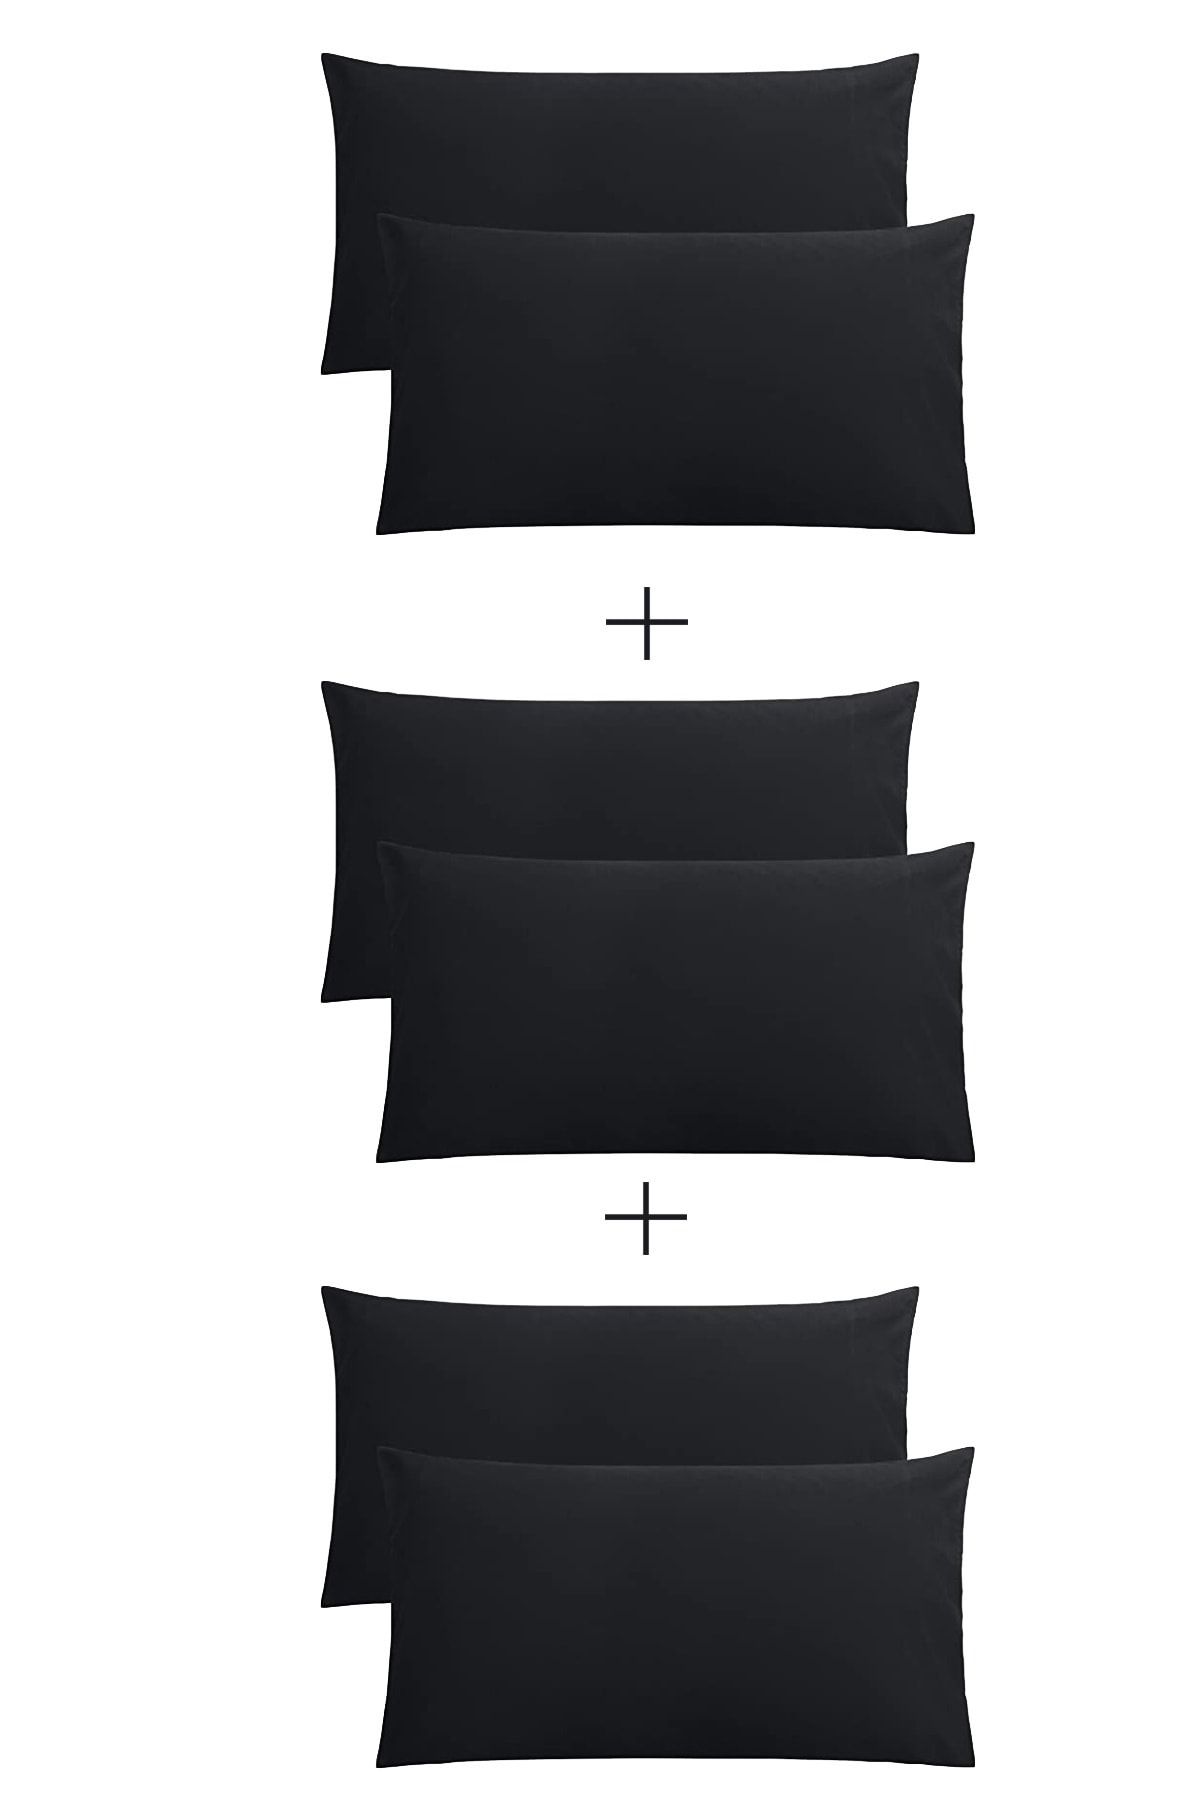 StellaFlavo Stella Flavo 6'lı Yastık Kılıfı 50x70+20cm Kapaklı Siyah-siyah-siyah